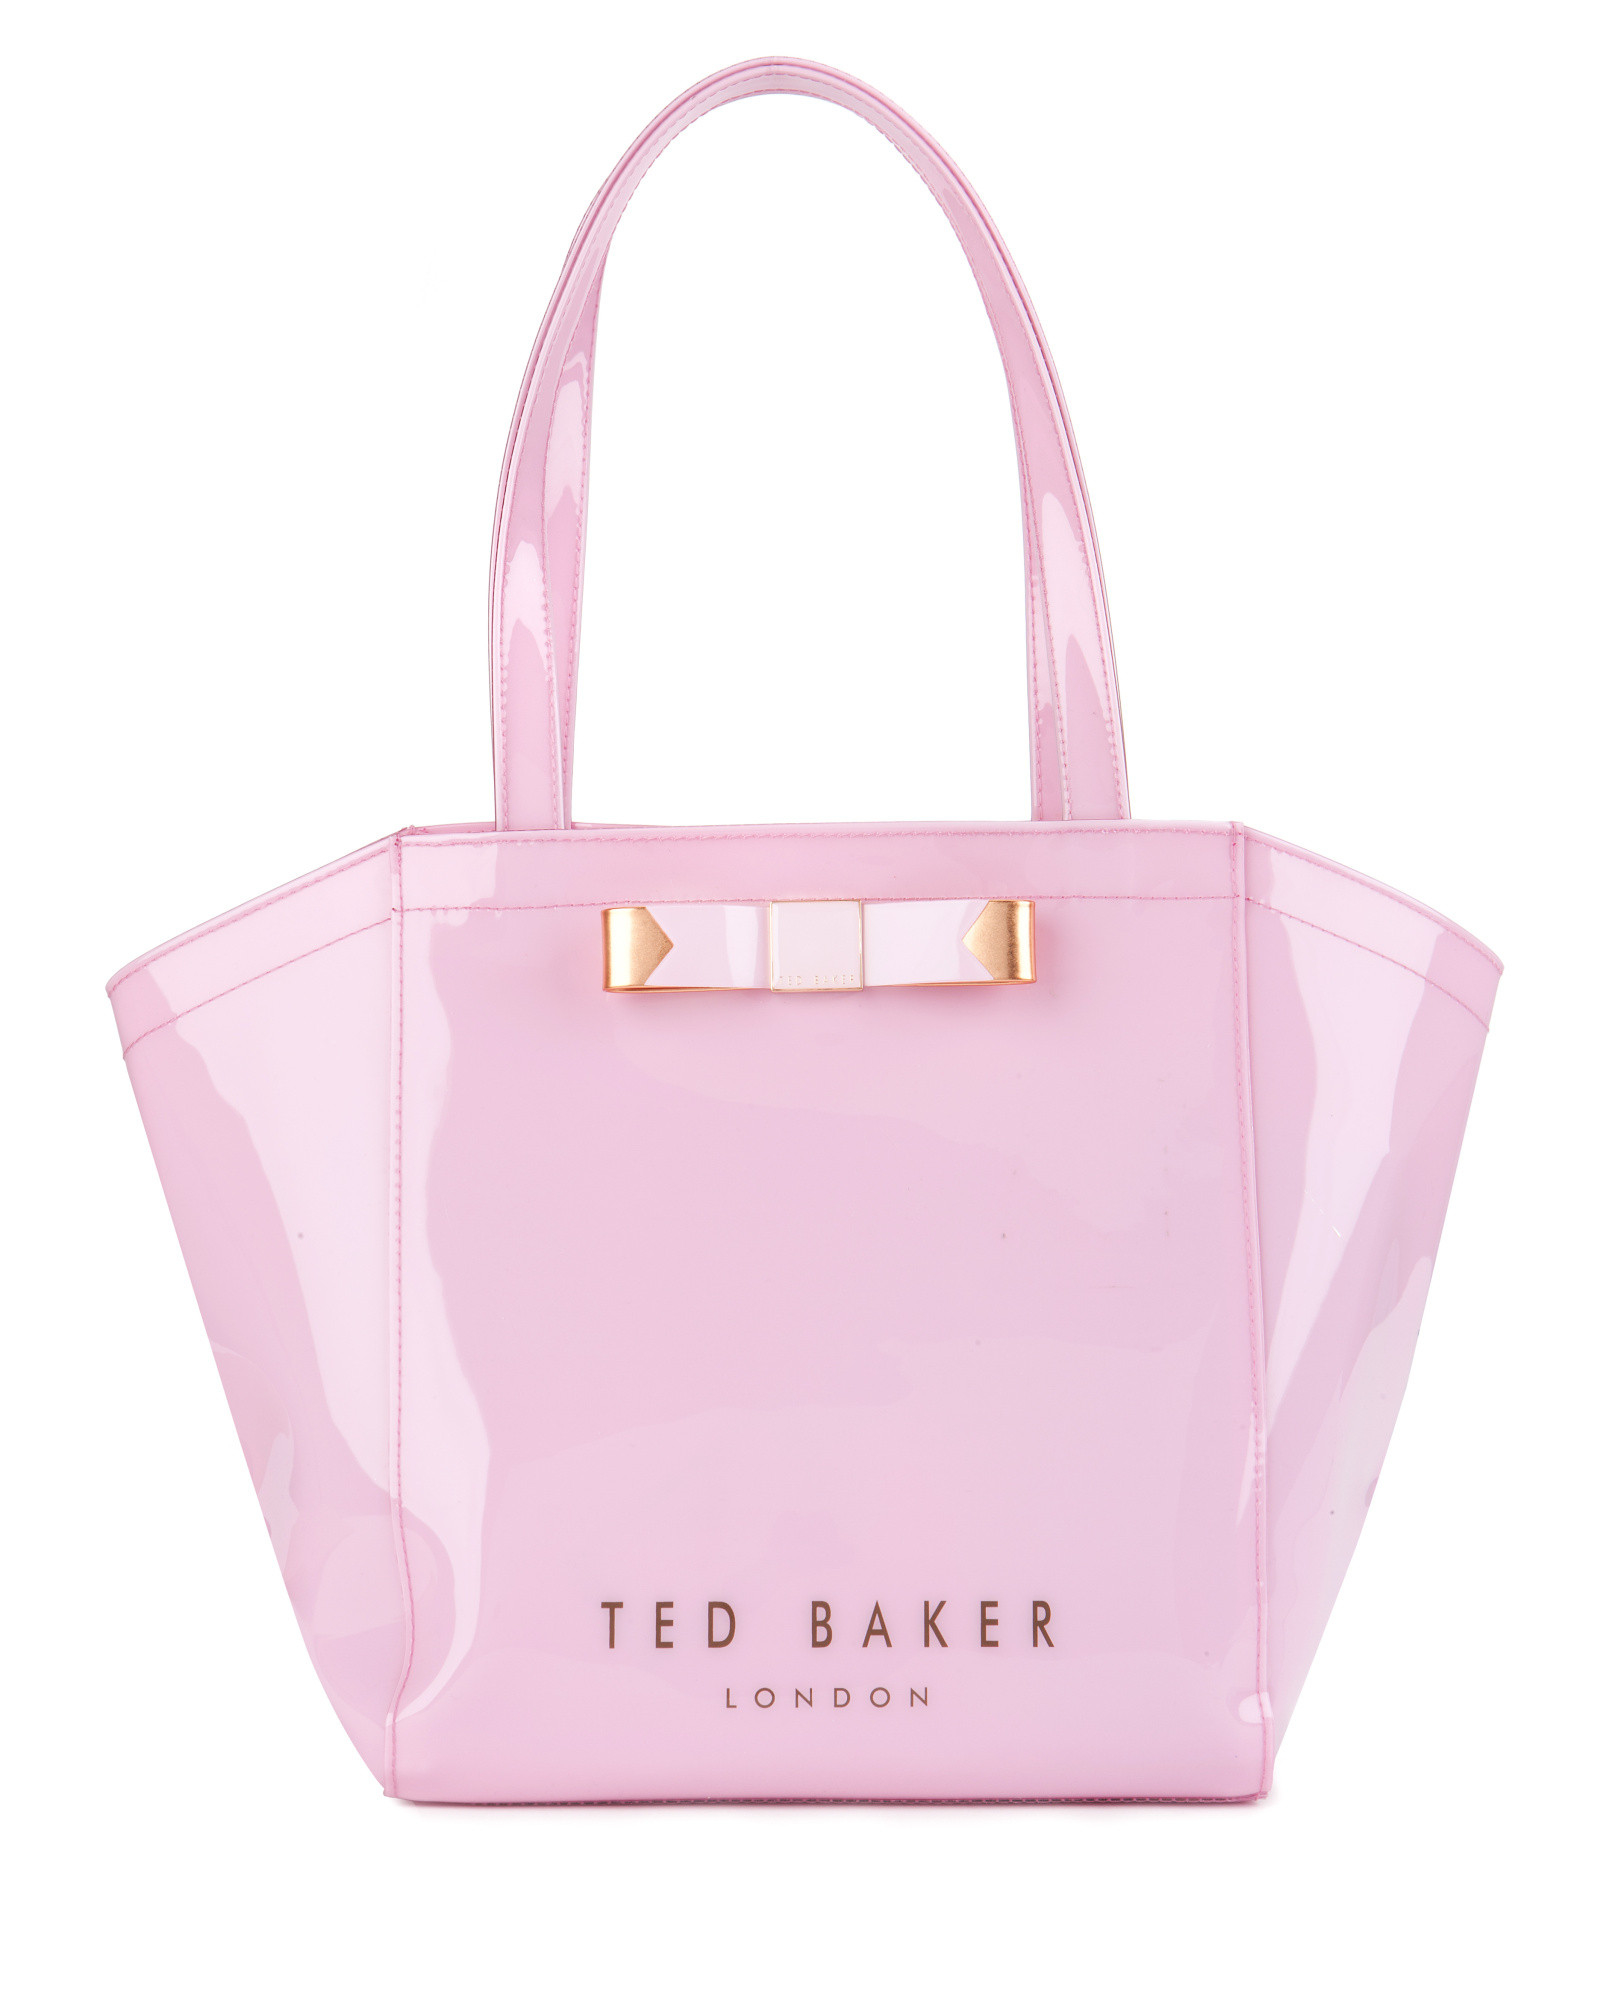 Ted Baker Pink Backpack. Ted Baker Men's 0 Backpack, Black, One Size.